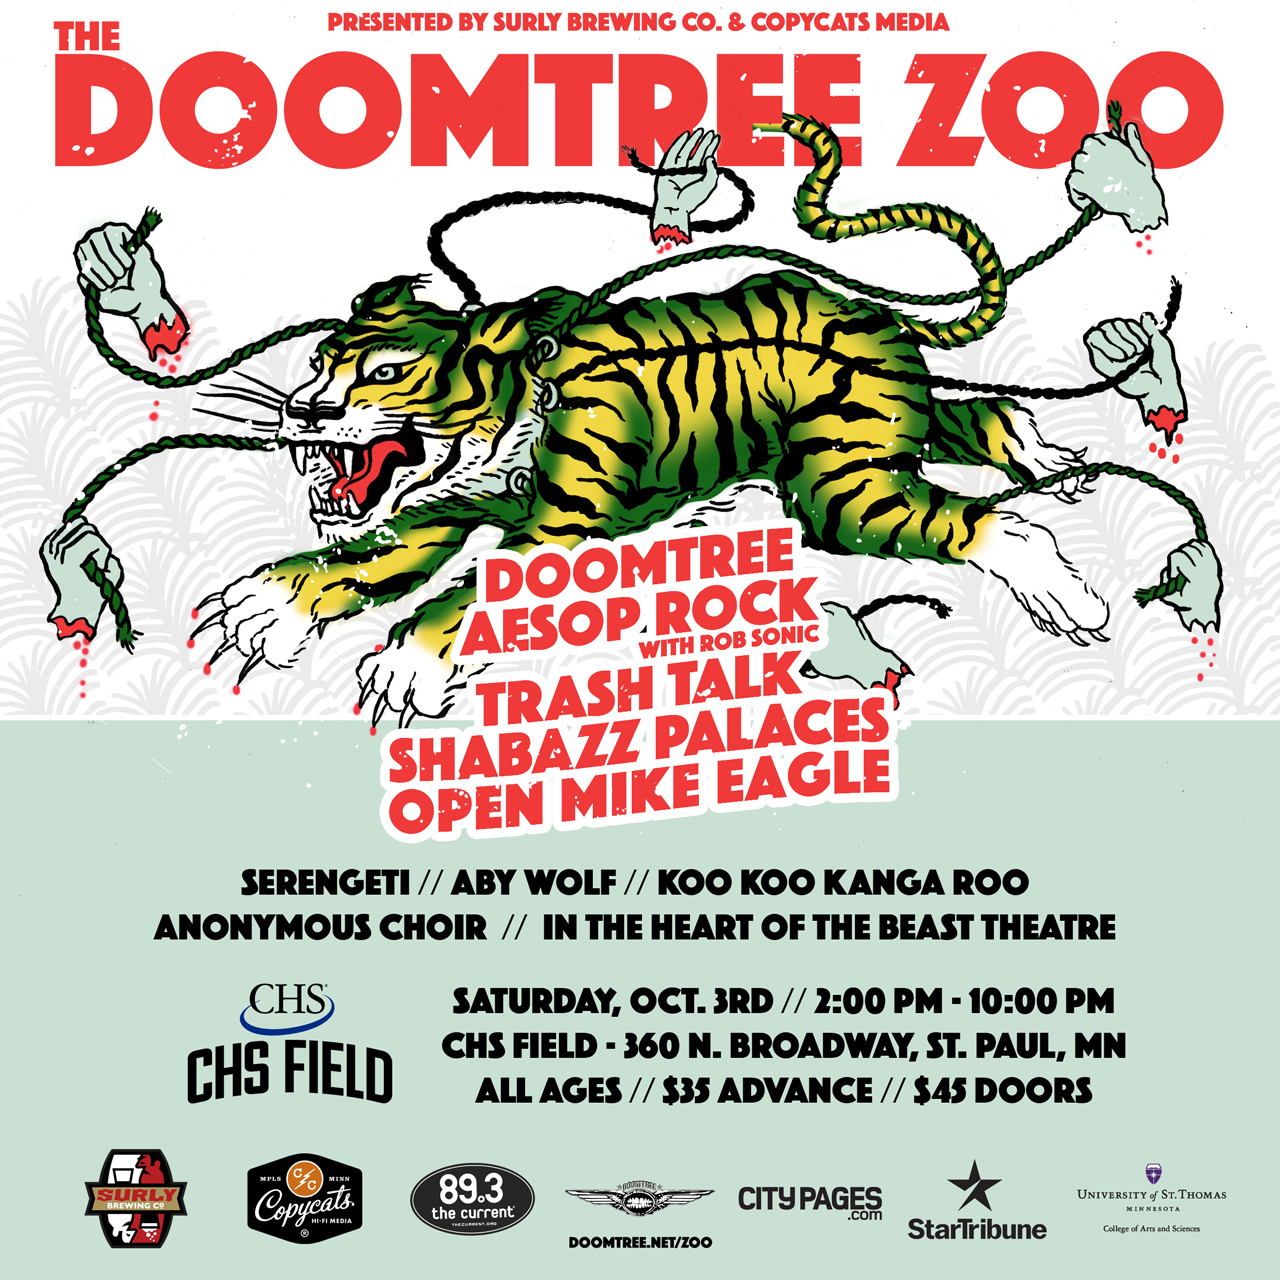 Doomtree-Zoo-INSTAGRAM-OCT3